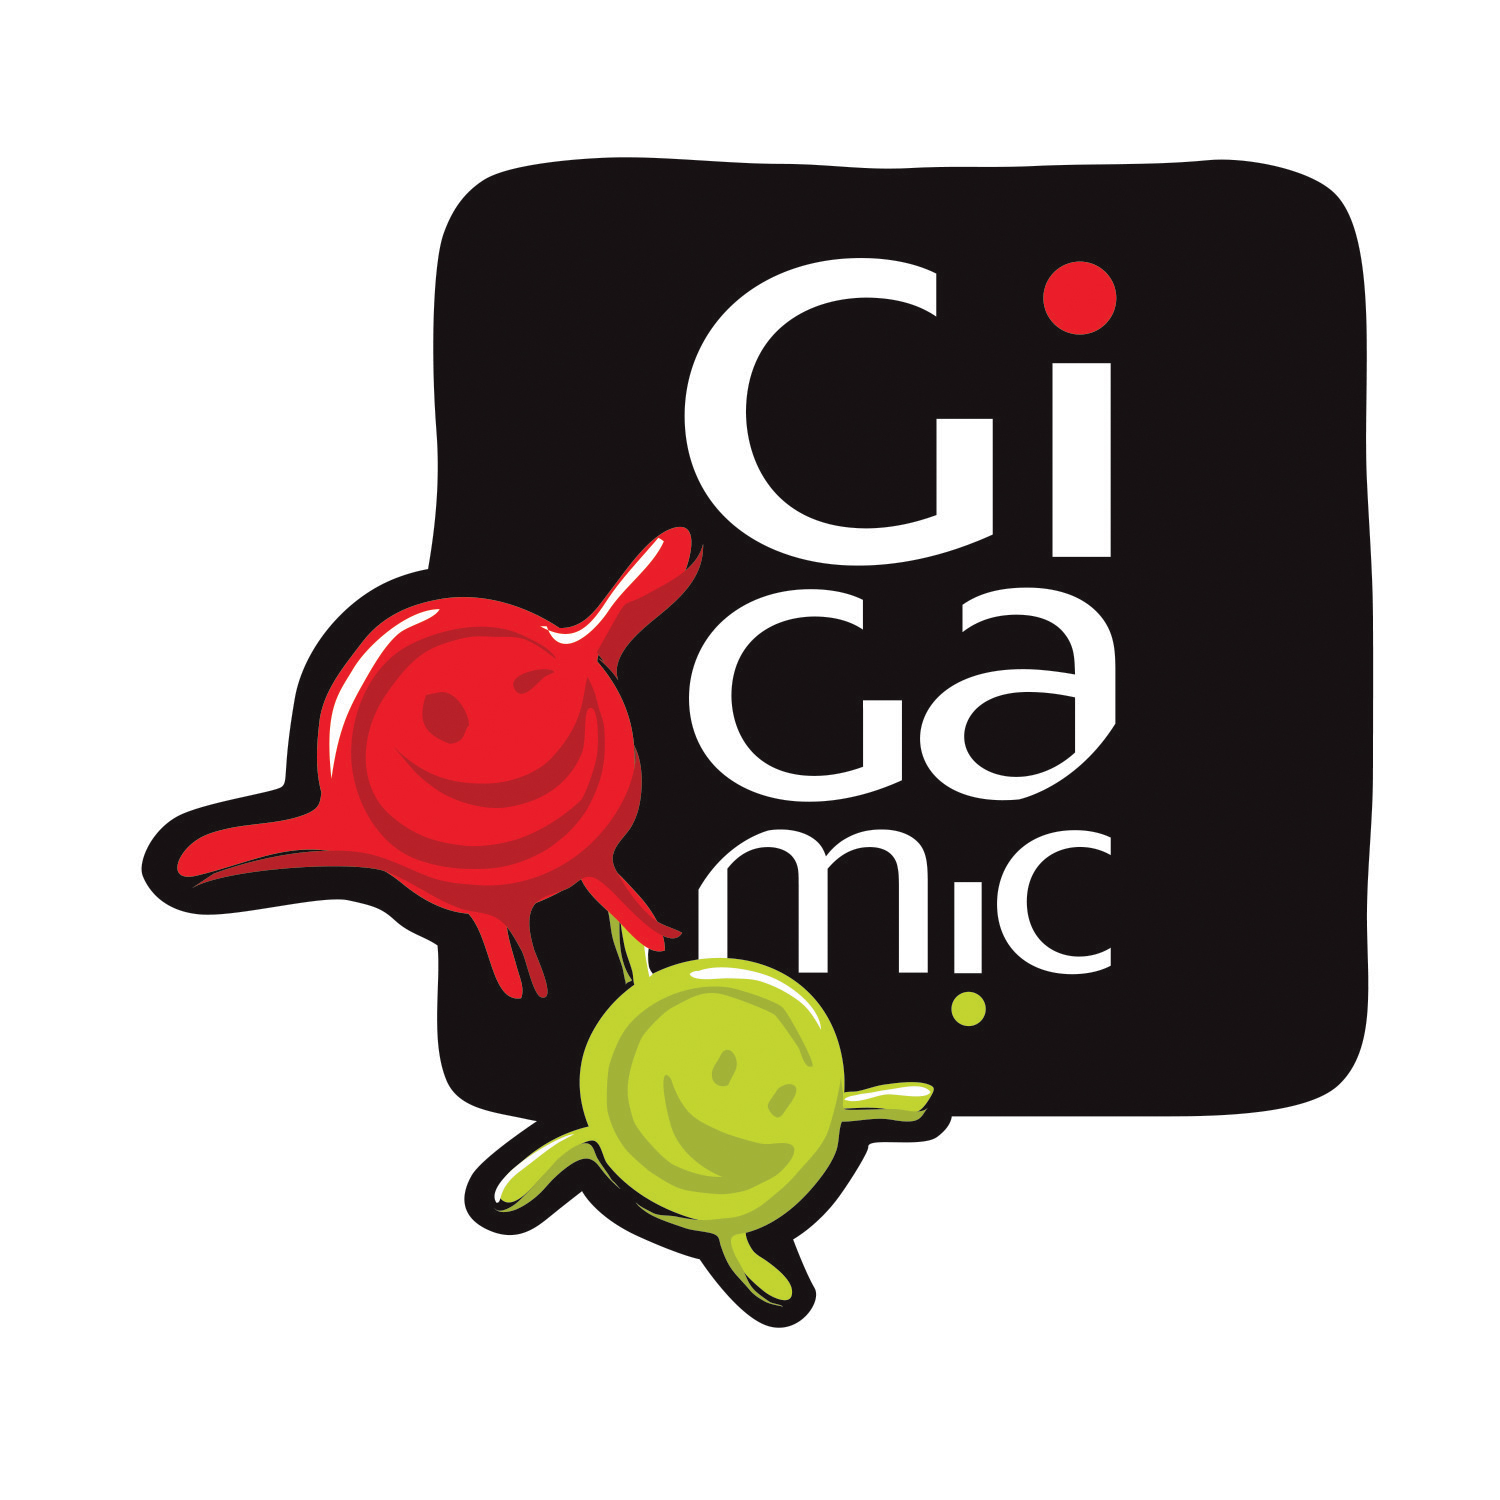 Gigamic — Wikipédia